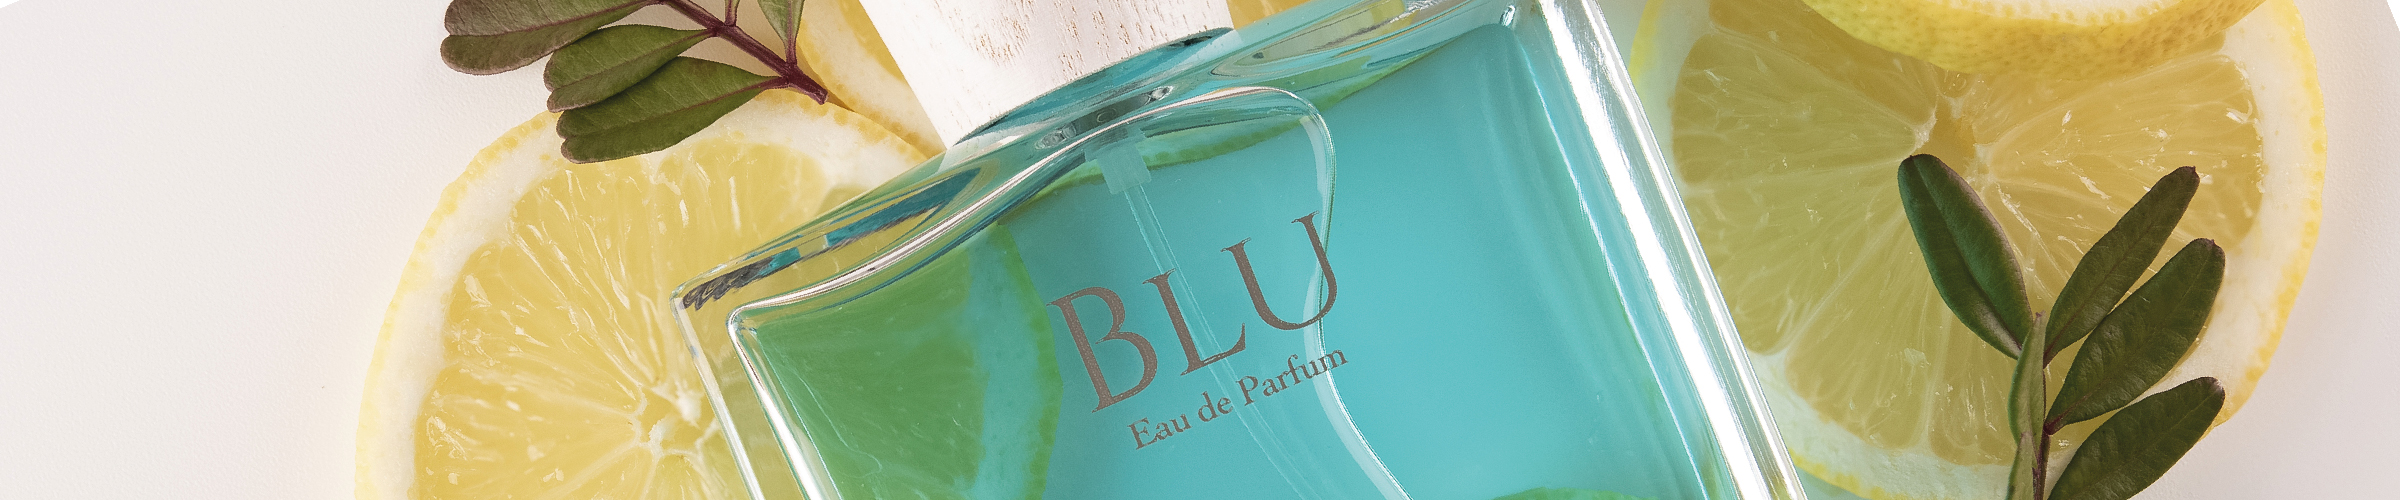 Eau de parfum Blu 30 ml Acqua degli Dei